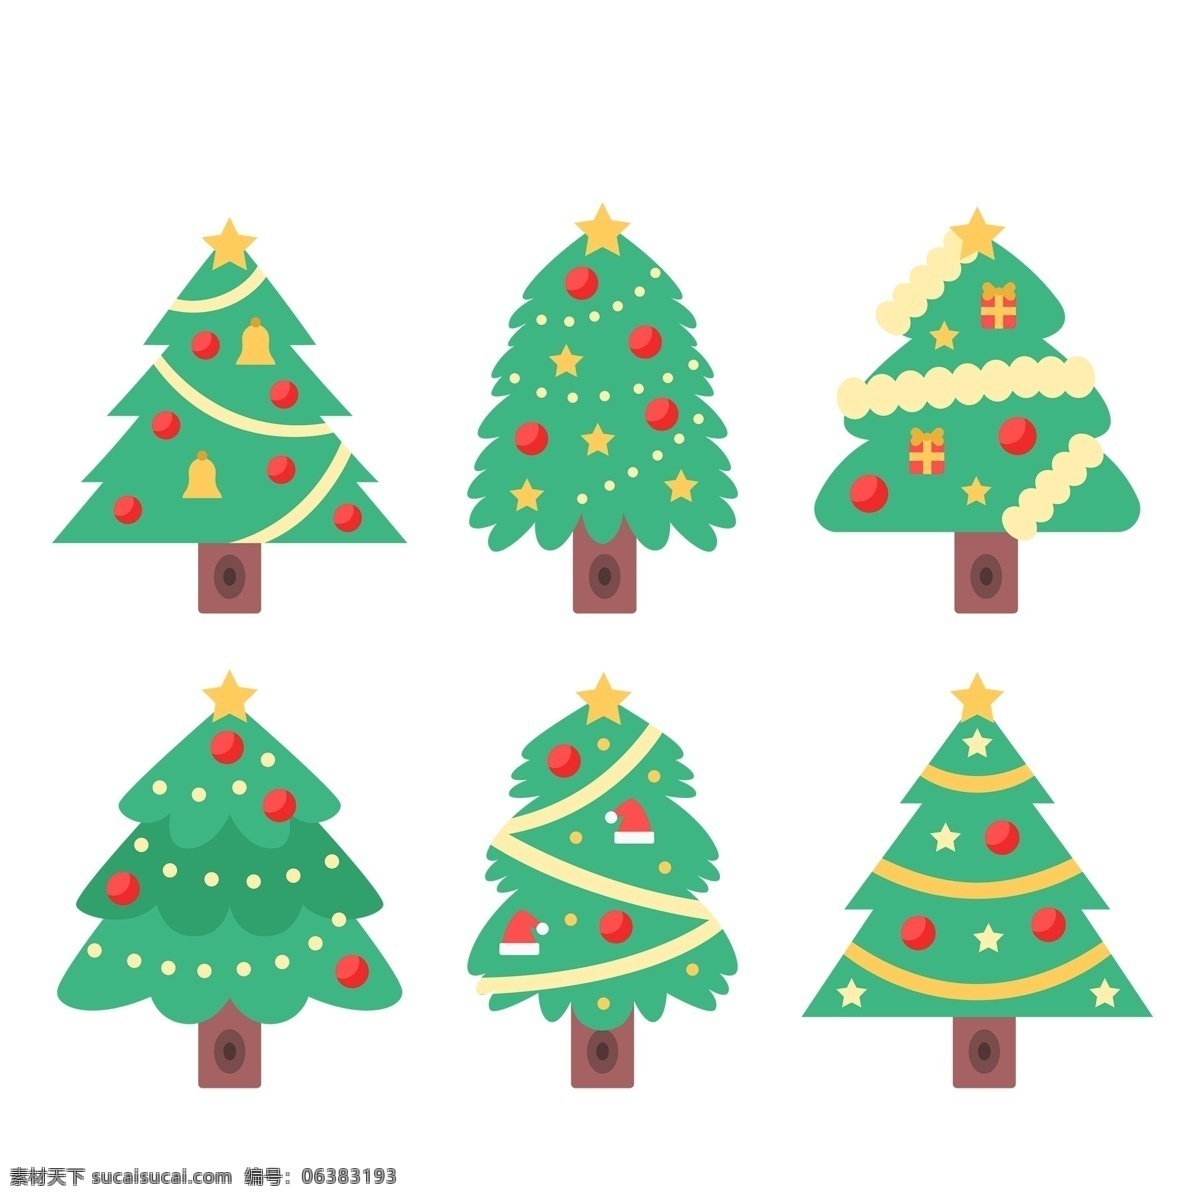 卡通 打扮 好 圣诞树 免 抠 透明 图 圣诞树素材 圣诞树装饰图 圣诞树元素 圣诞节树 圣诞元素 节日元素